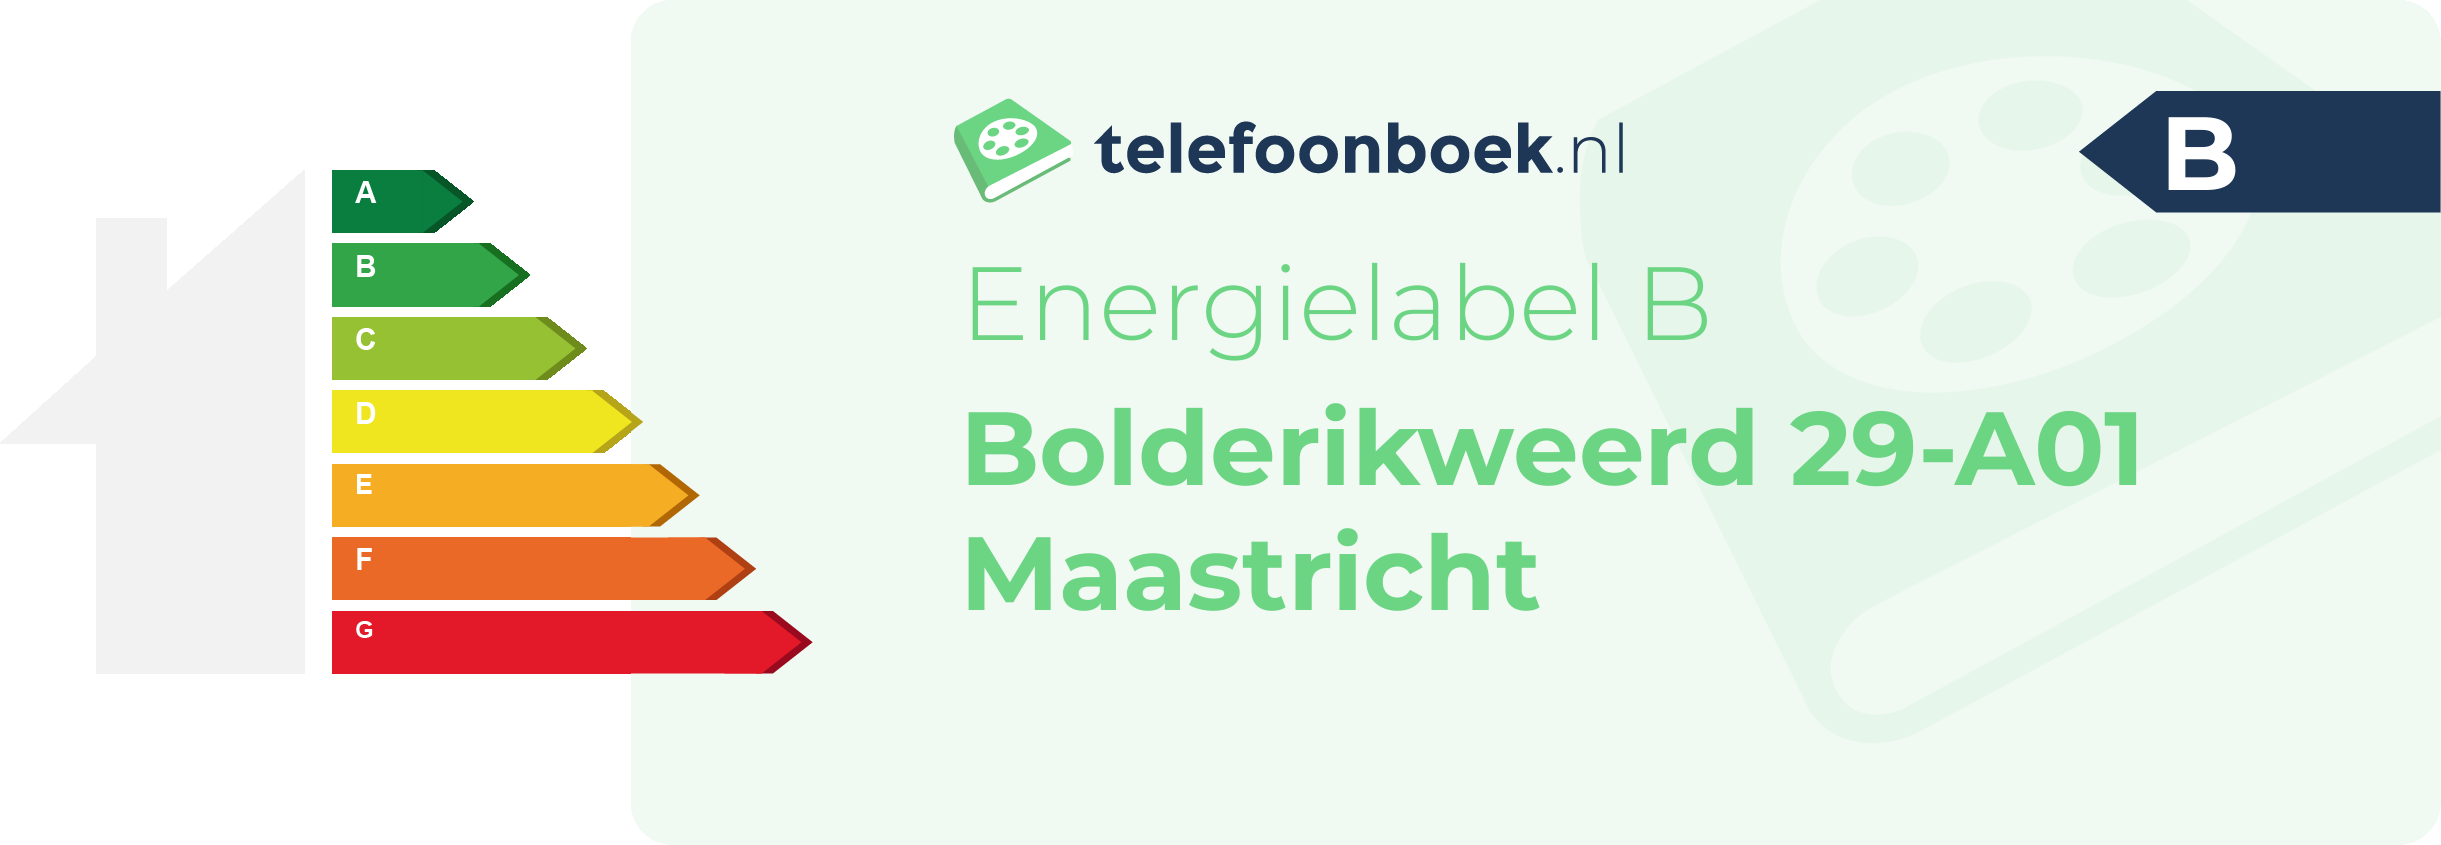 Energielabel Bolderikweerd 29-A01 Maastricht